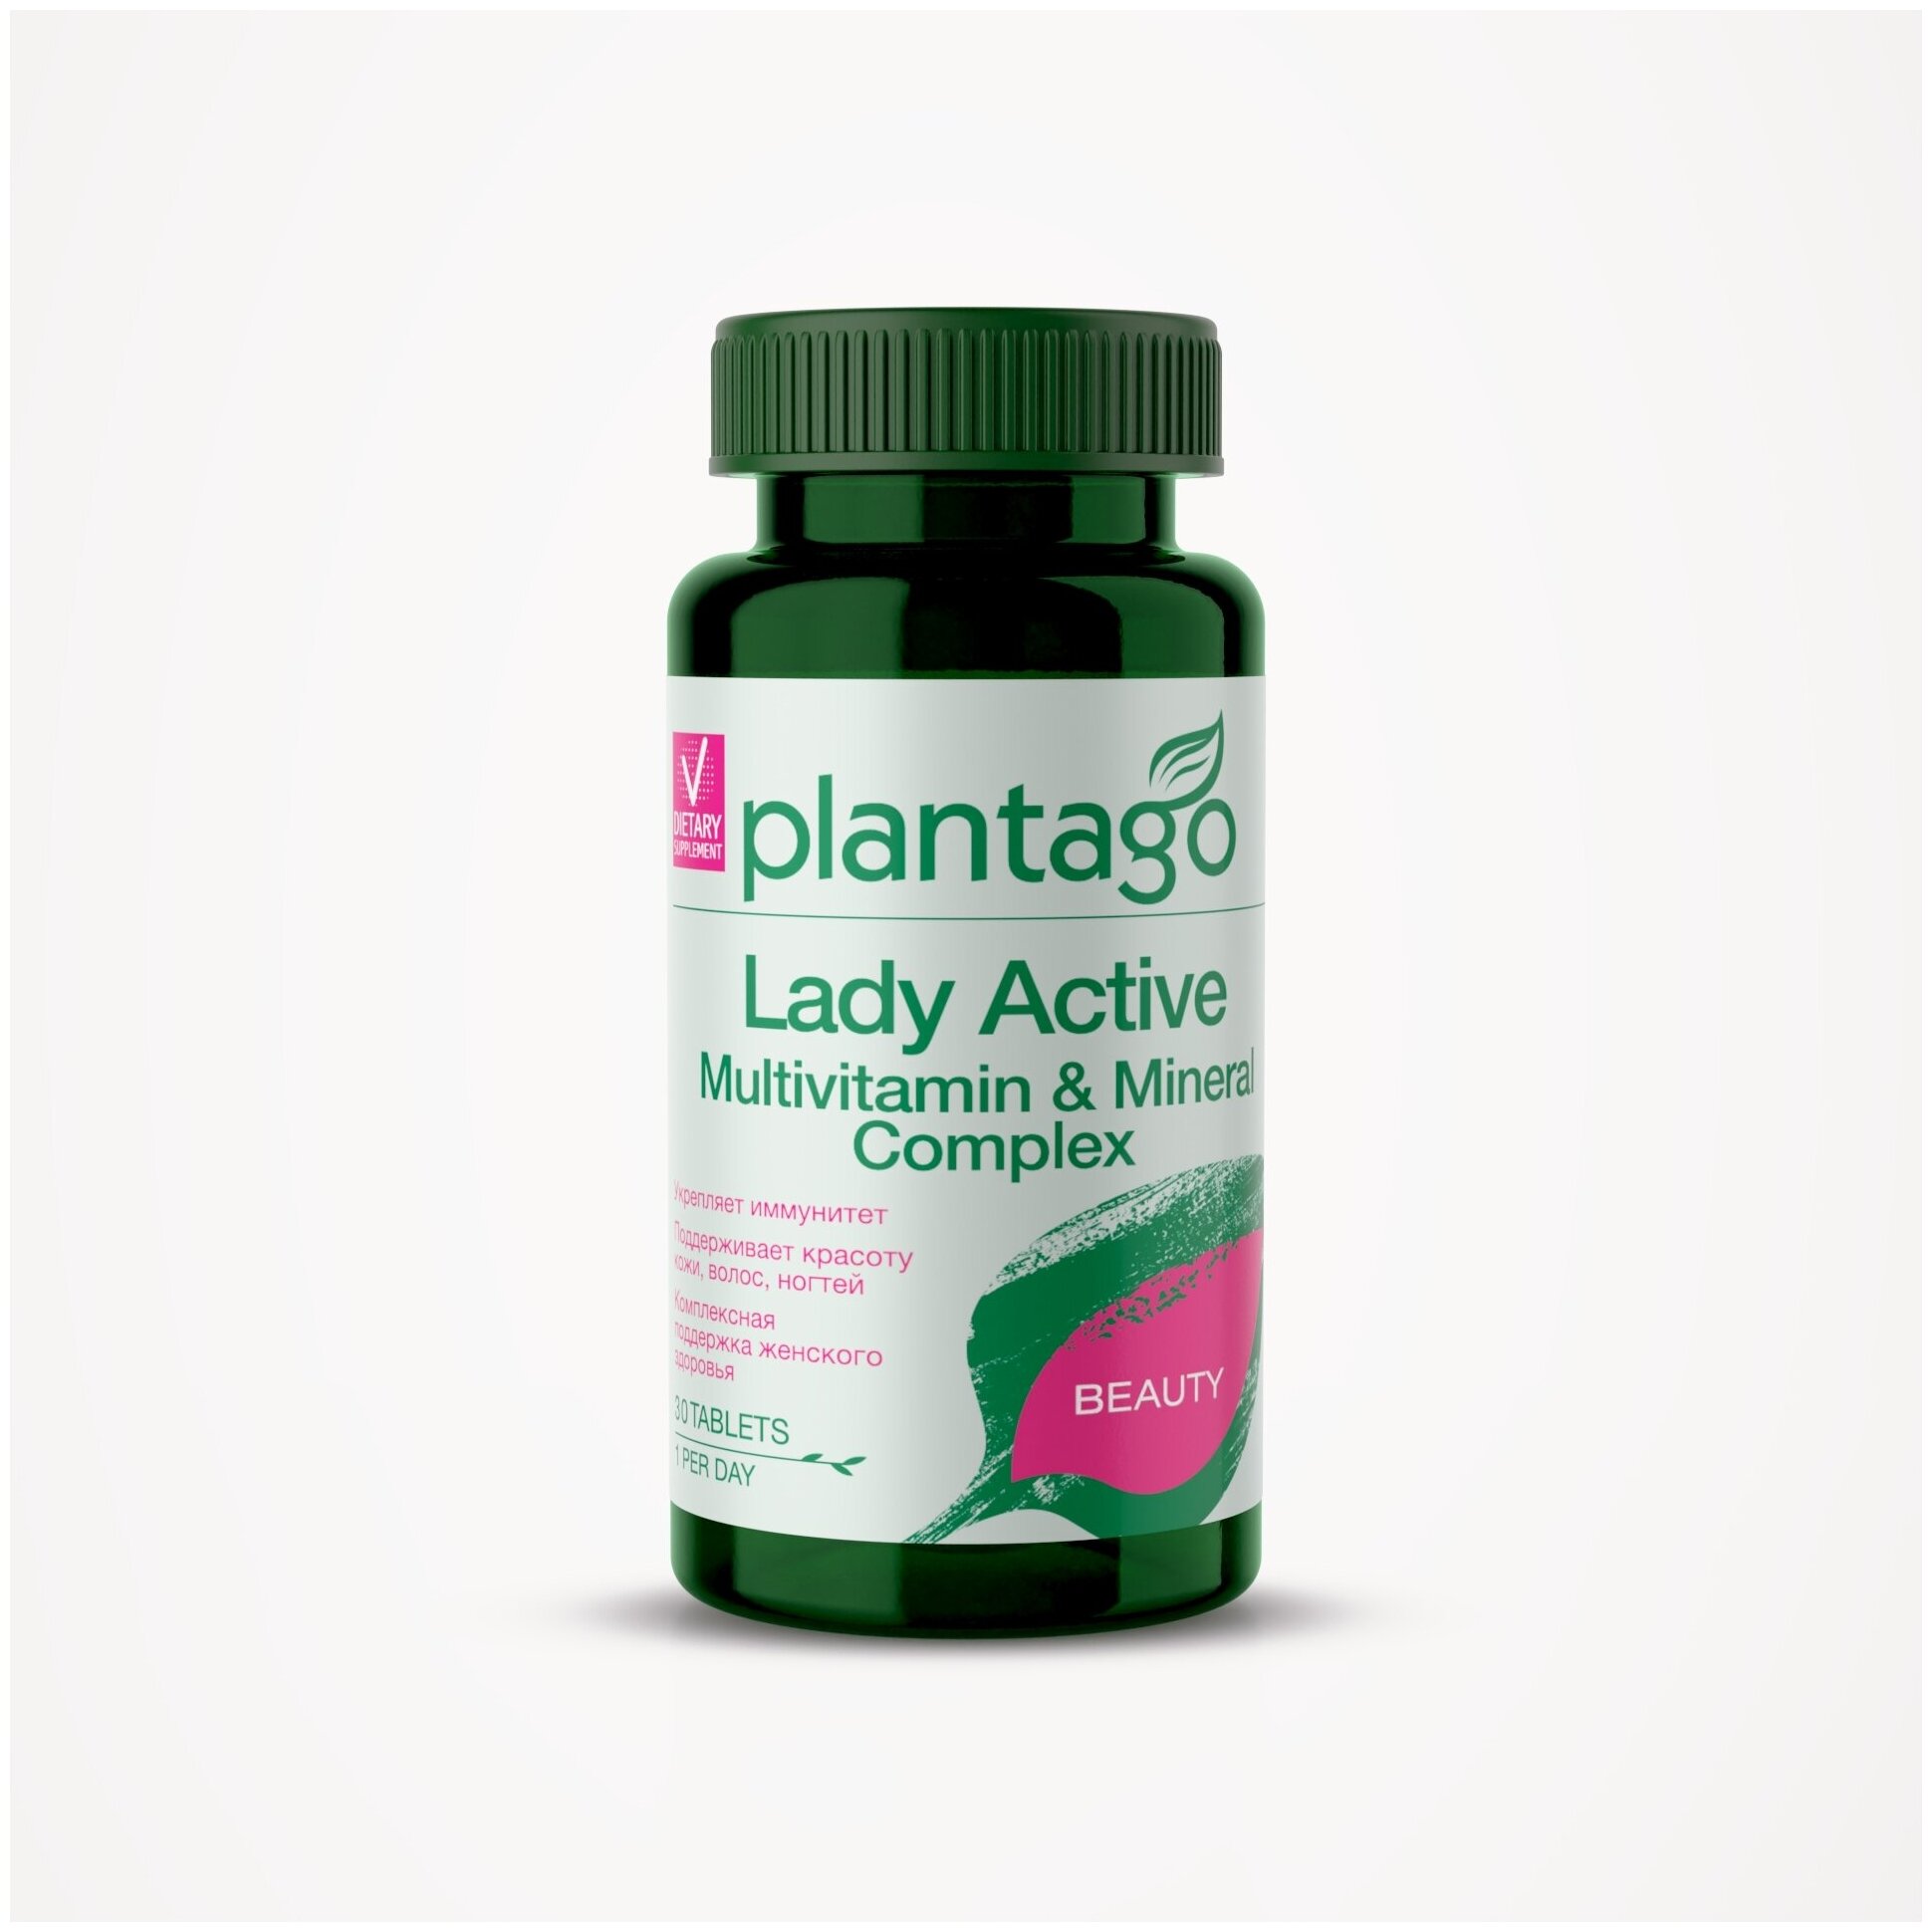 Plantago Lady Active Multivitamin & Mineral Complex Витаминно-минеральный комплекс для женщин от А до Zn / Плантаго